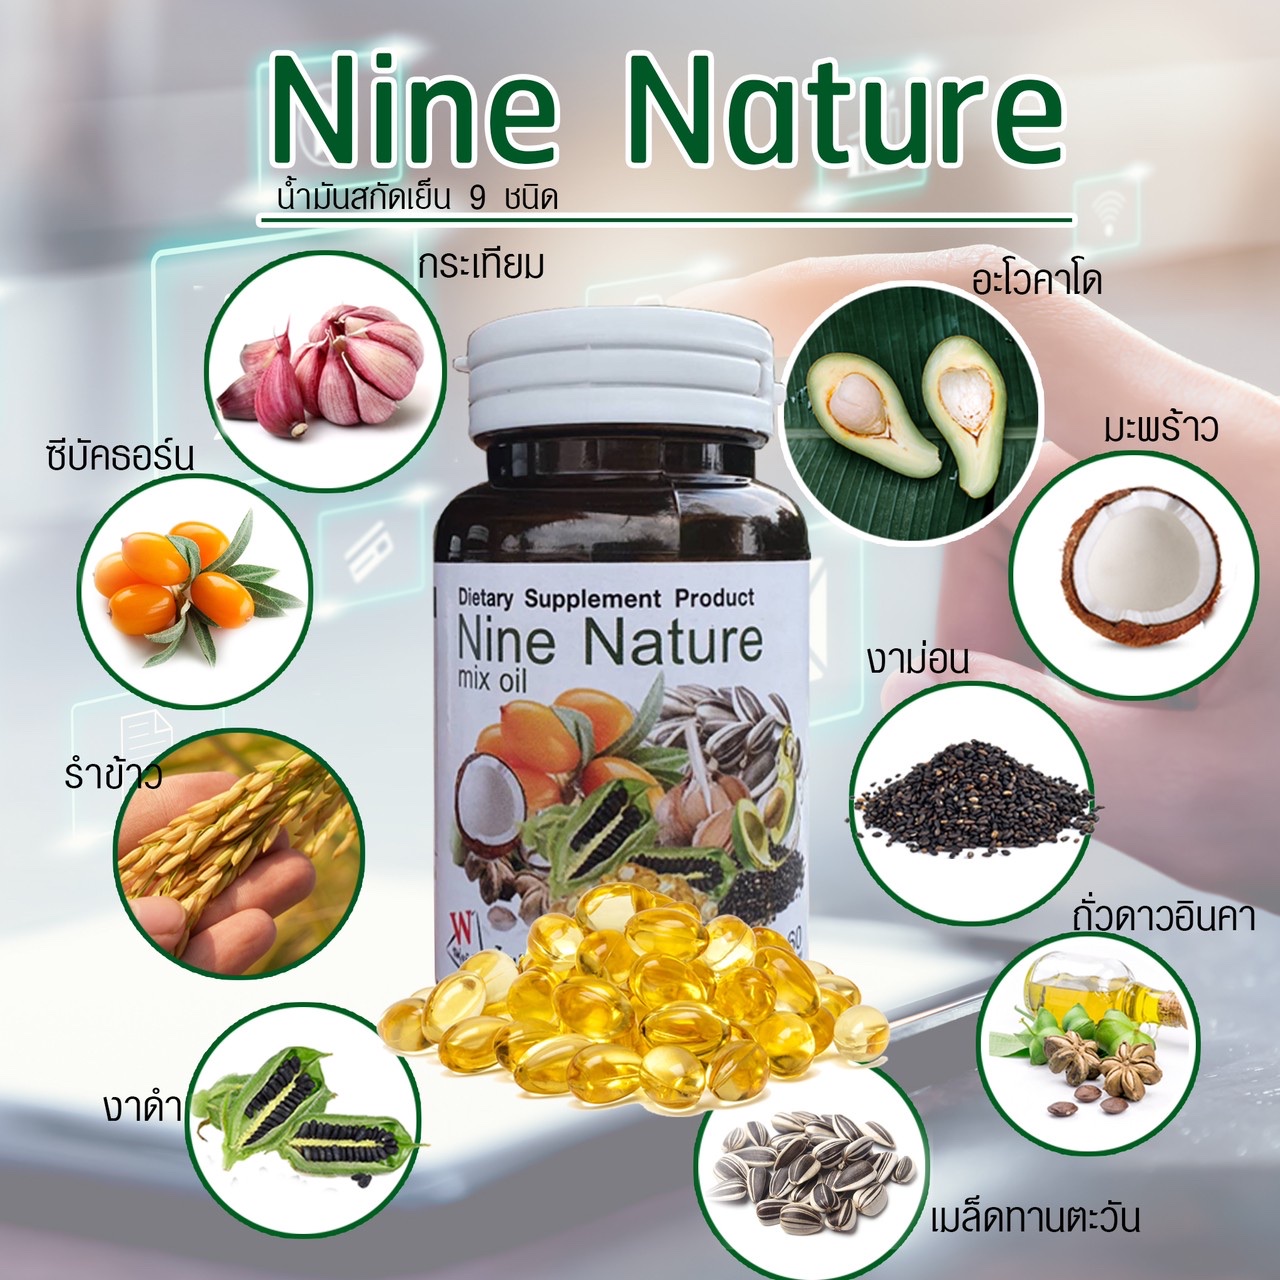 Nine Nature mix oilน้ำมันสกัดเย็น 9ชนิด เพื่อสุขภาพ น้ำมันอโวคาโด น้ำมันเมล็ดทานตะวัน น้ำมันถั่วดาวอินค น้ำมันมะพร้าว